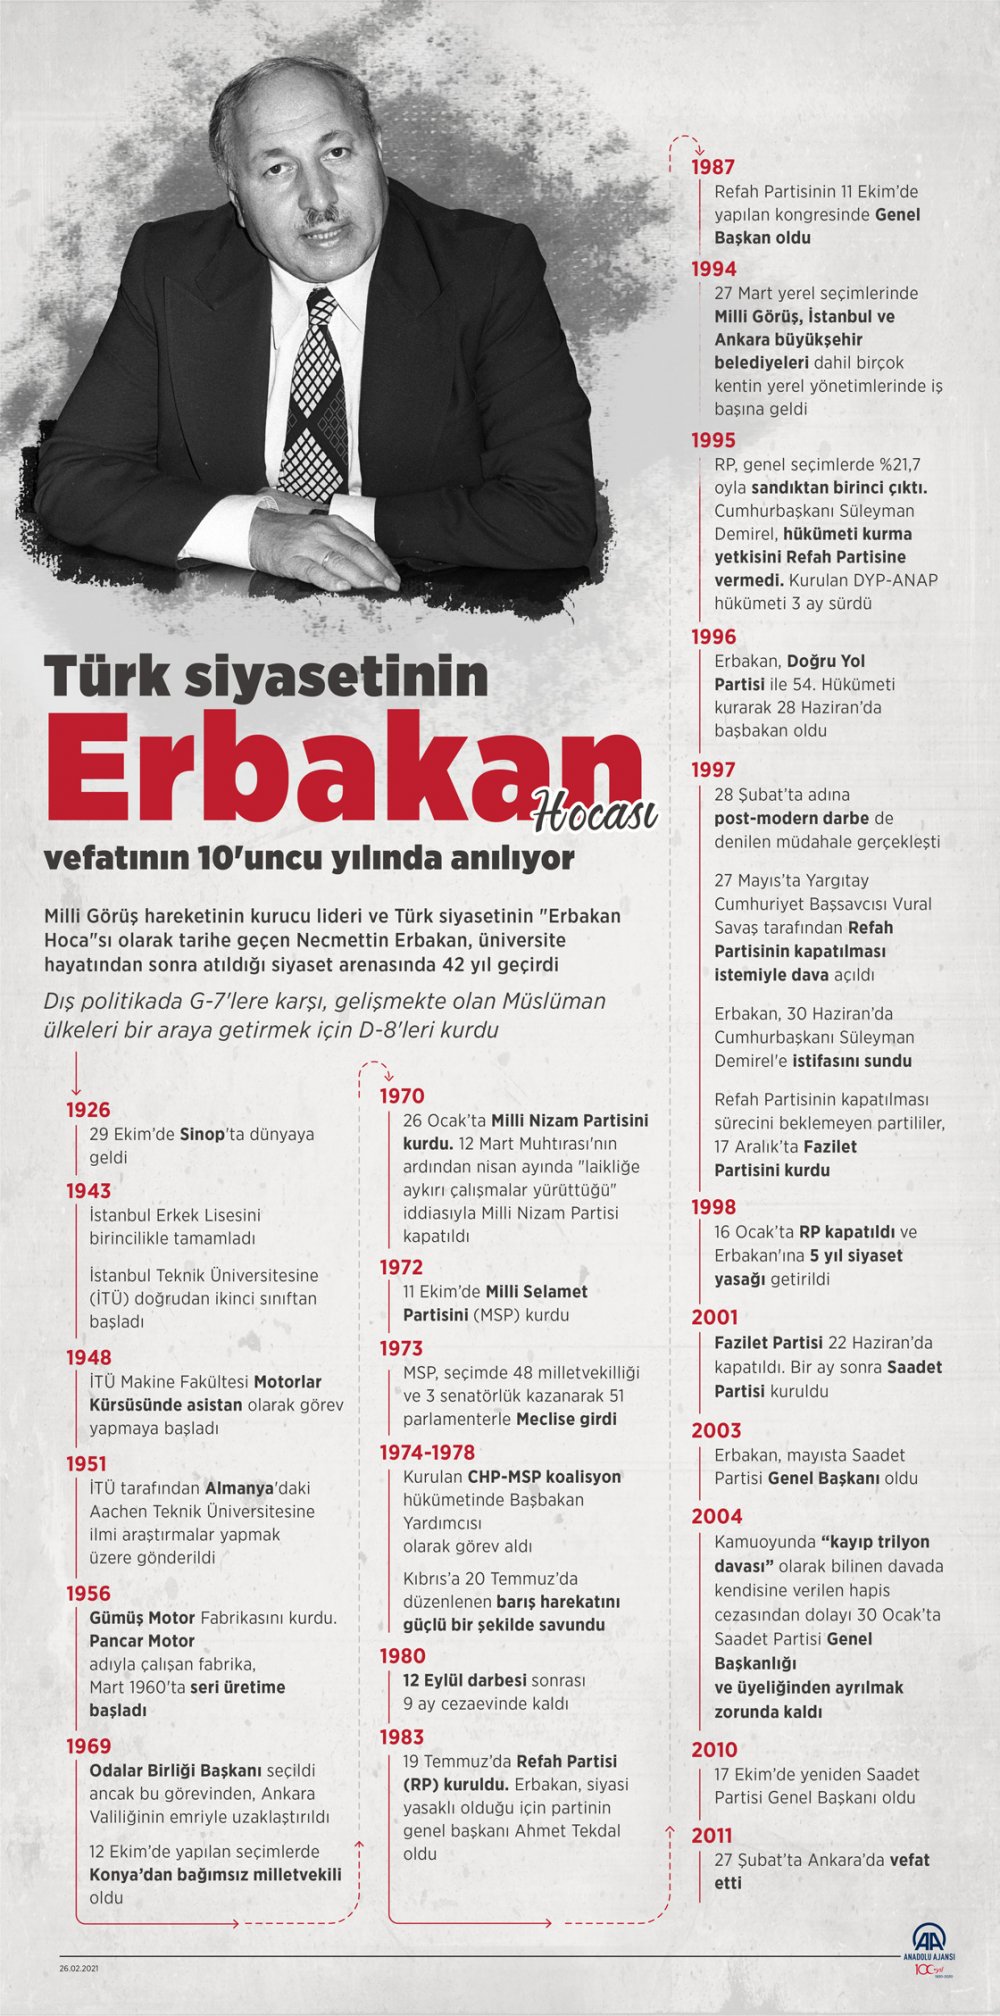 Türk siyasetinin 'Erbakan Hoca'sı vefatının 10'uncu yılında anılıyor